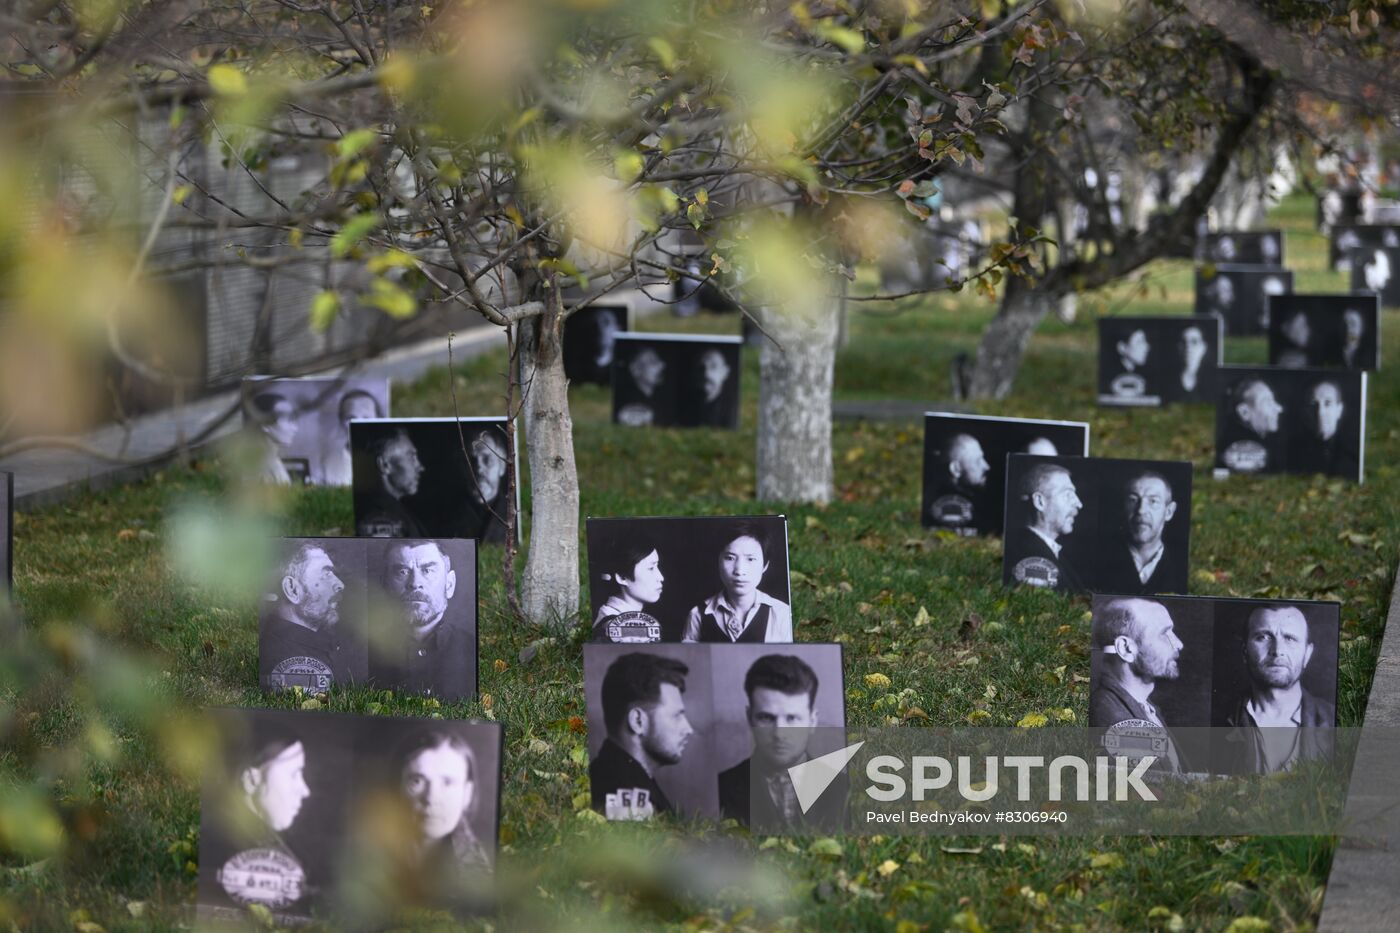 Russia Political Repression Victims Commemoration Day